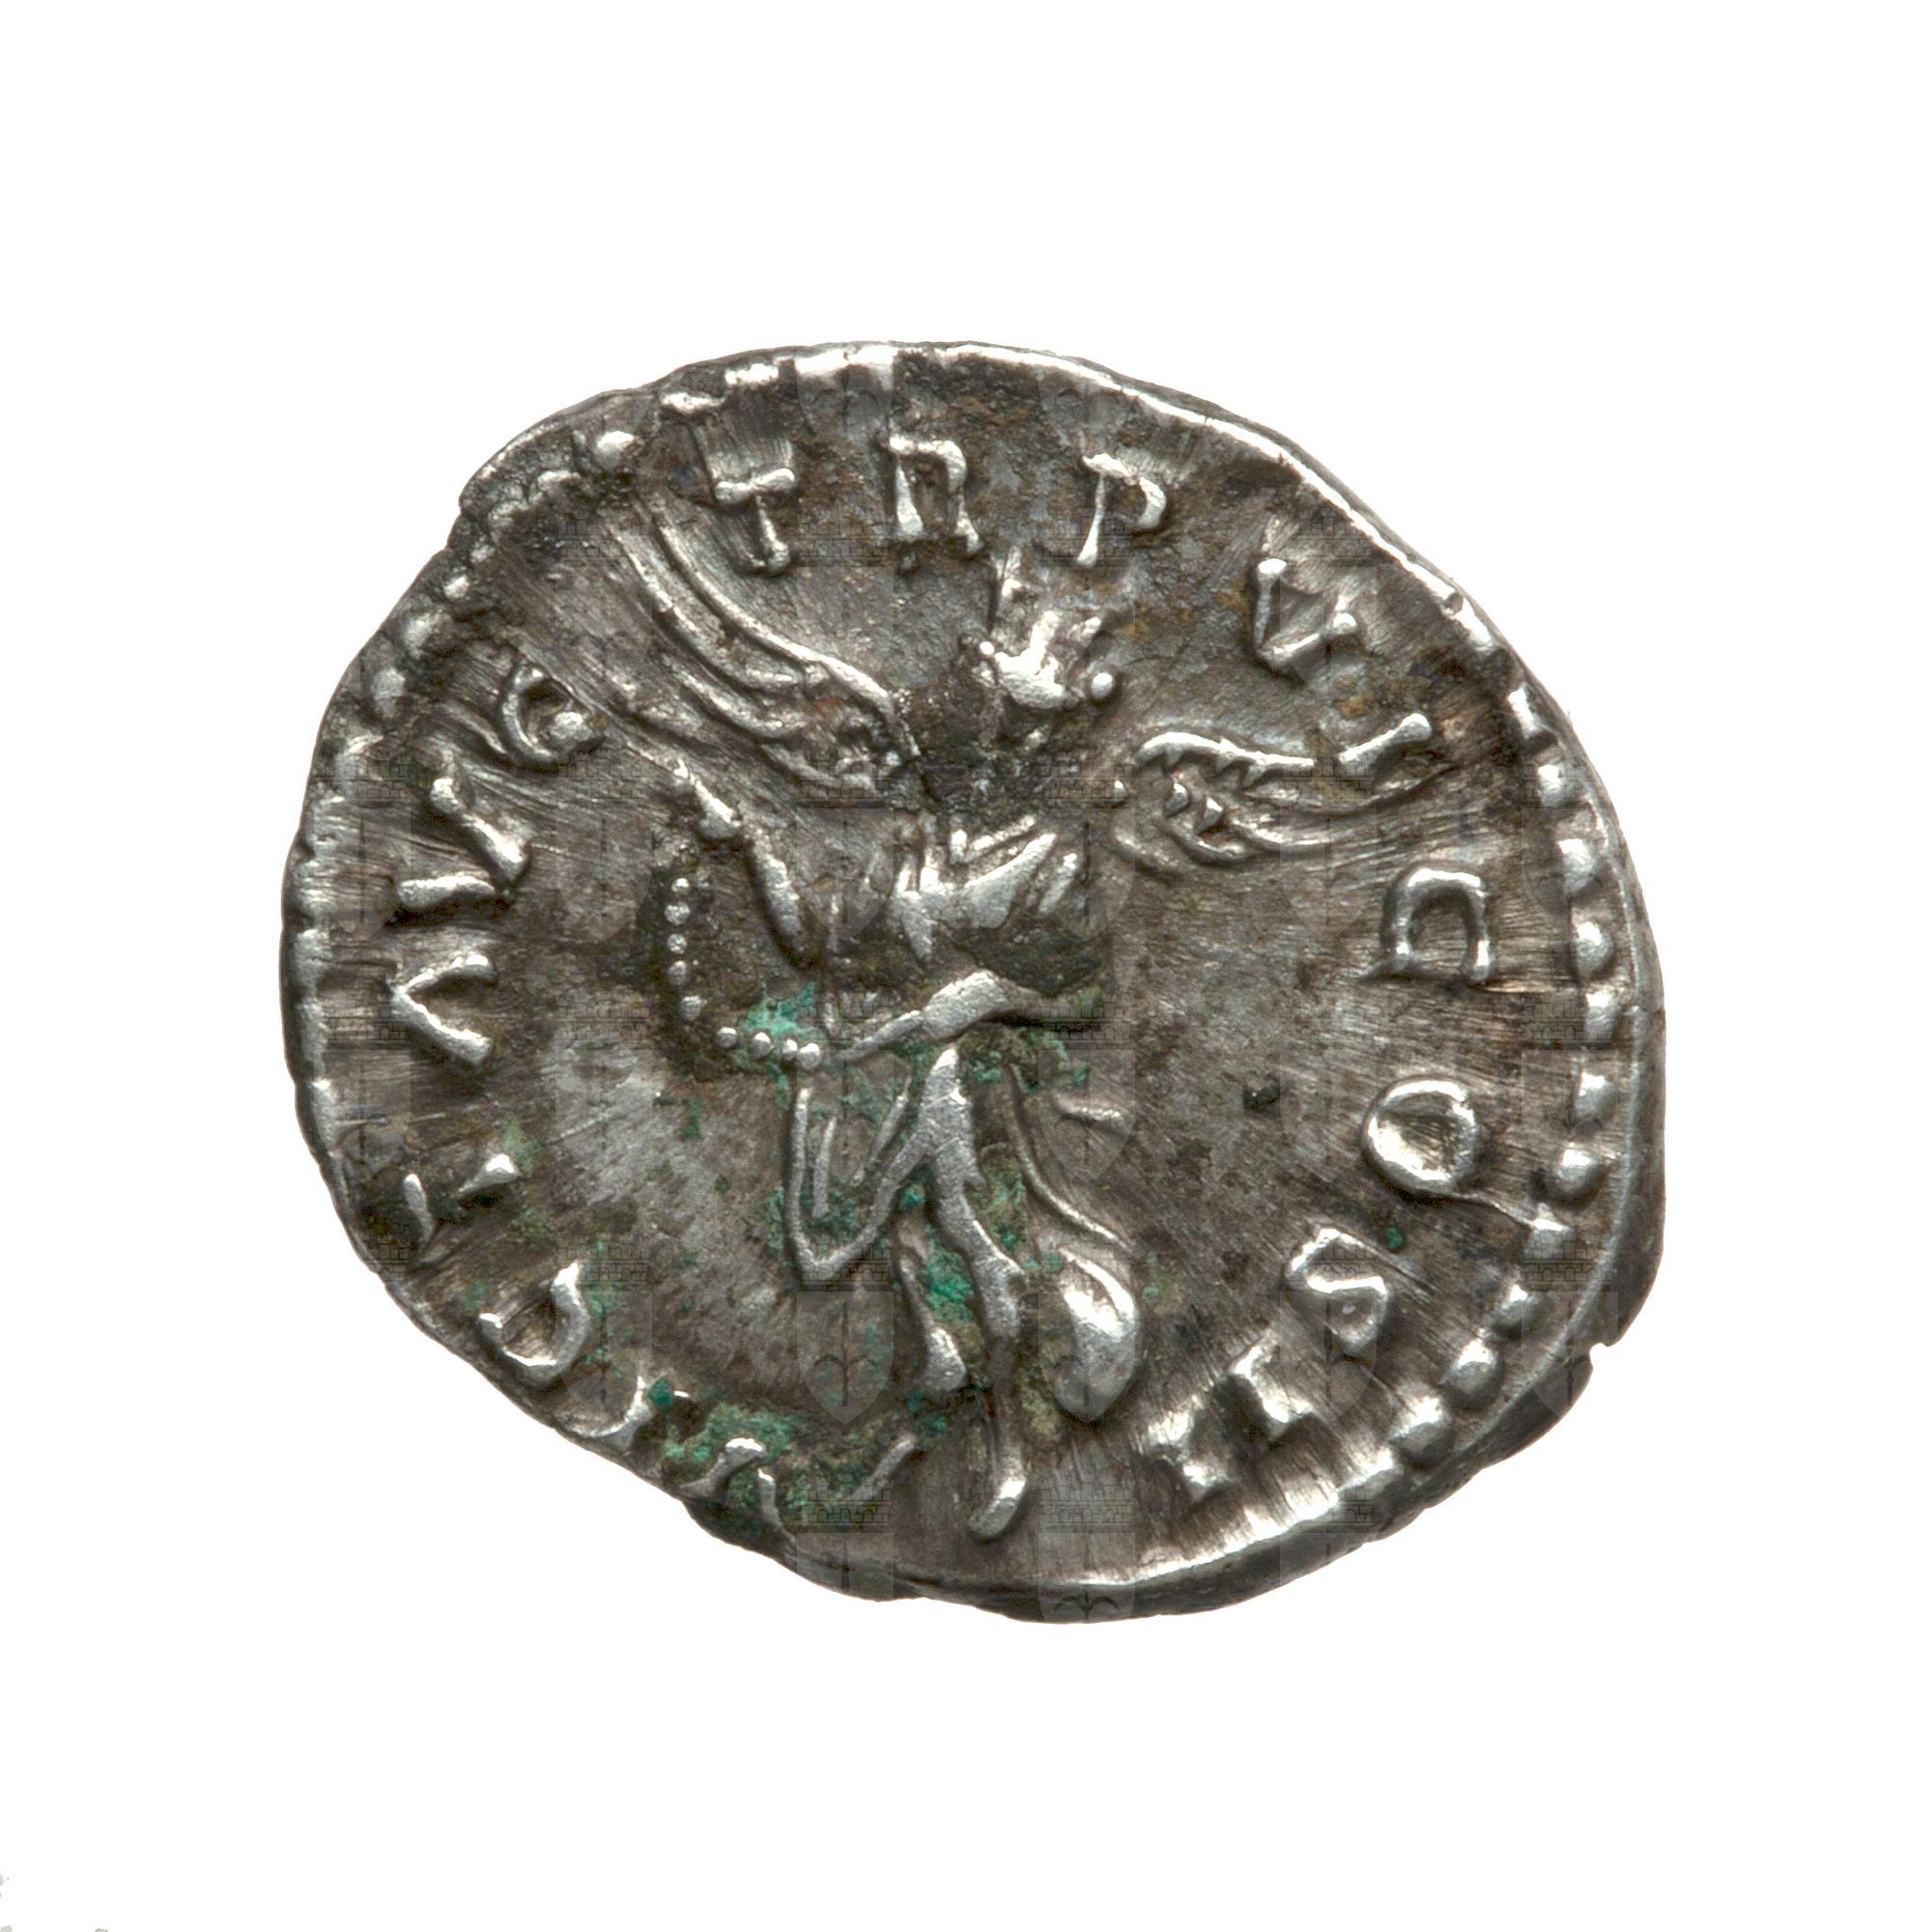 https://catalogomusei.comune.trieste.it/samira/resource/image/reperti-archeologici/Roma 1043 R Lucio Vero.jpg?token=6514f5ffaf084